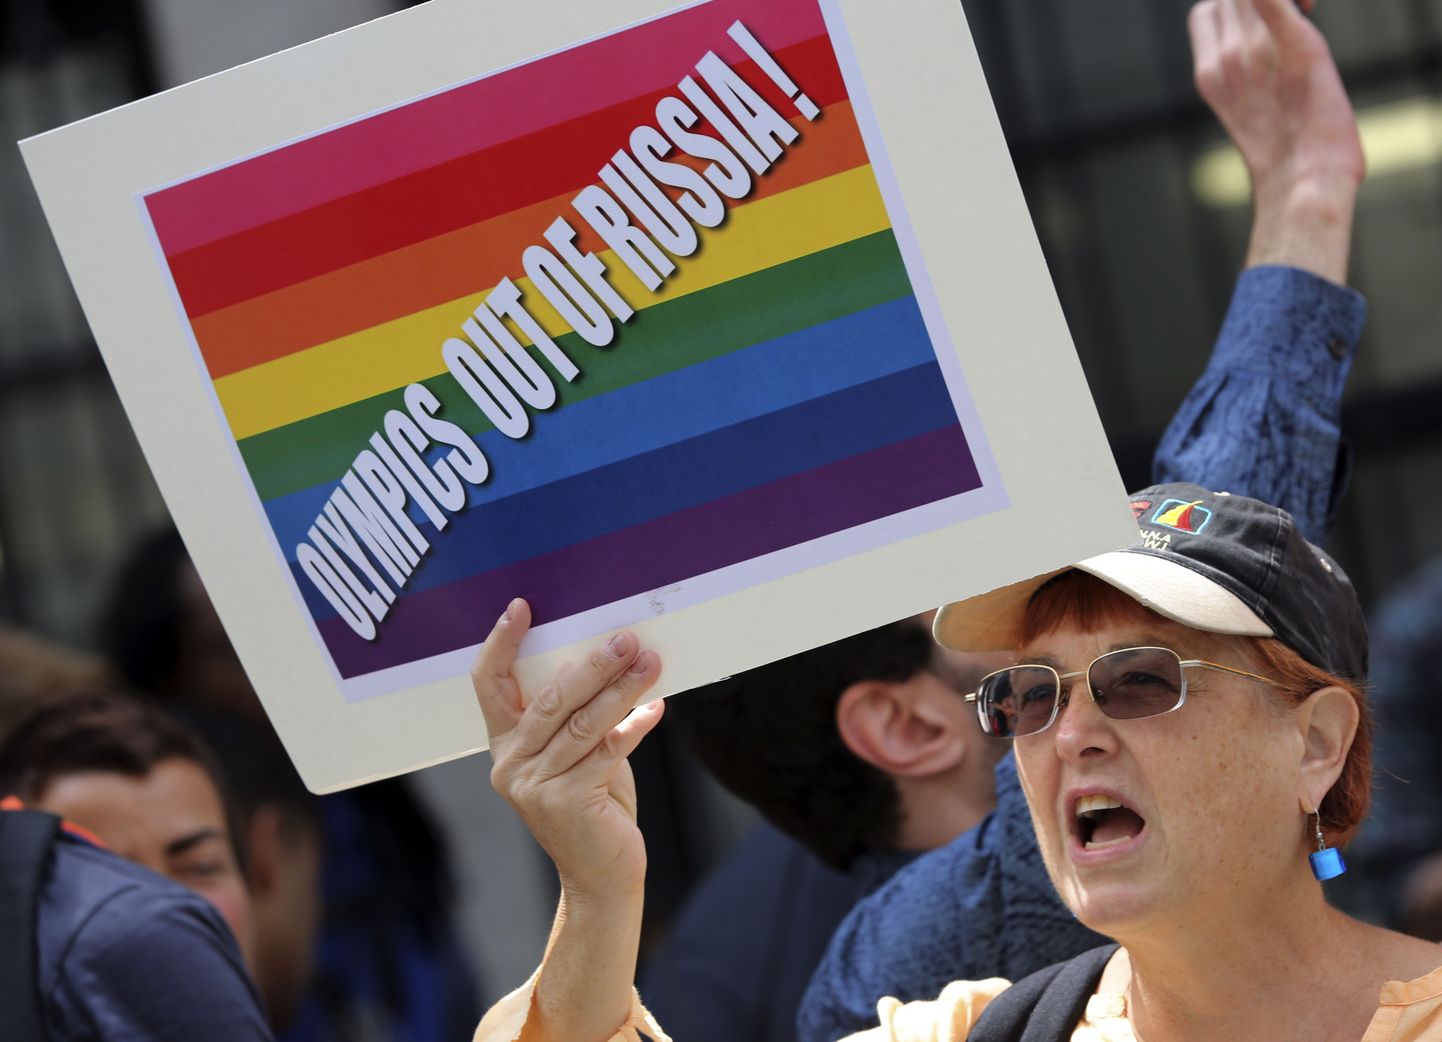 Активисты гей-движения митигуют у консульства РФ в Нью-Йорке, протестуя против антигейского закона.